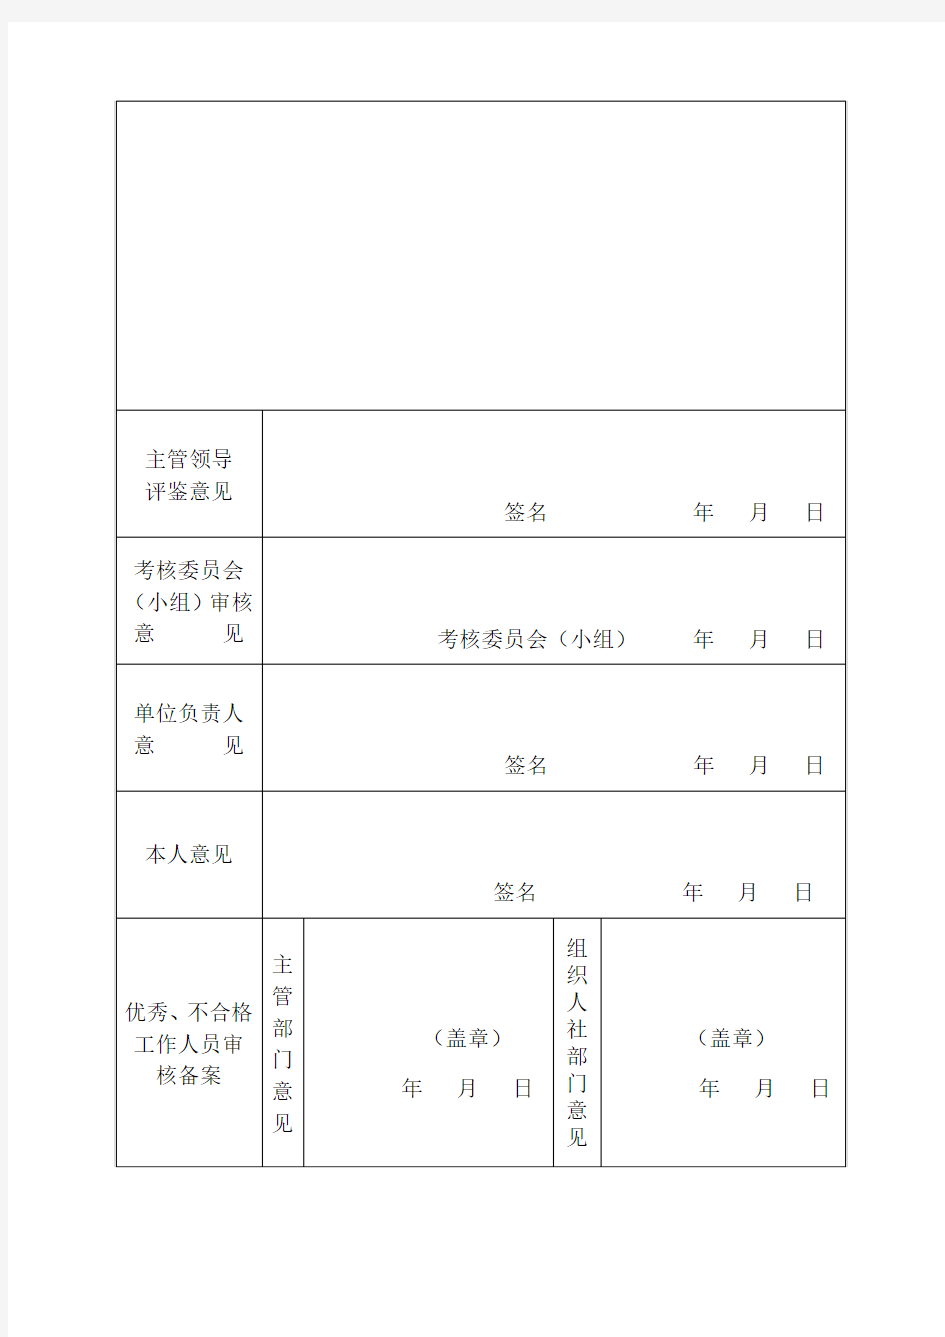 镇江市事业单位工作人员年度考核登记表